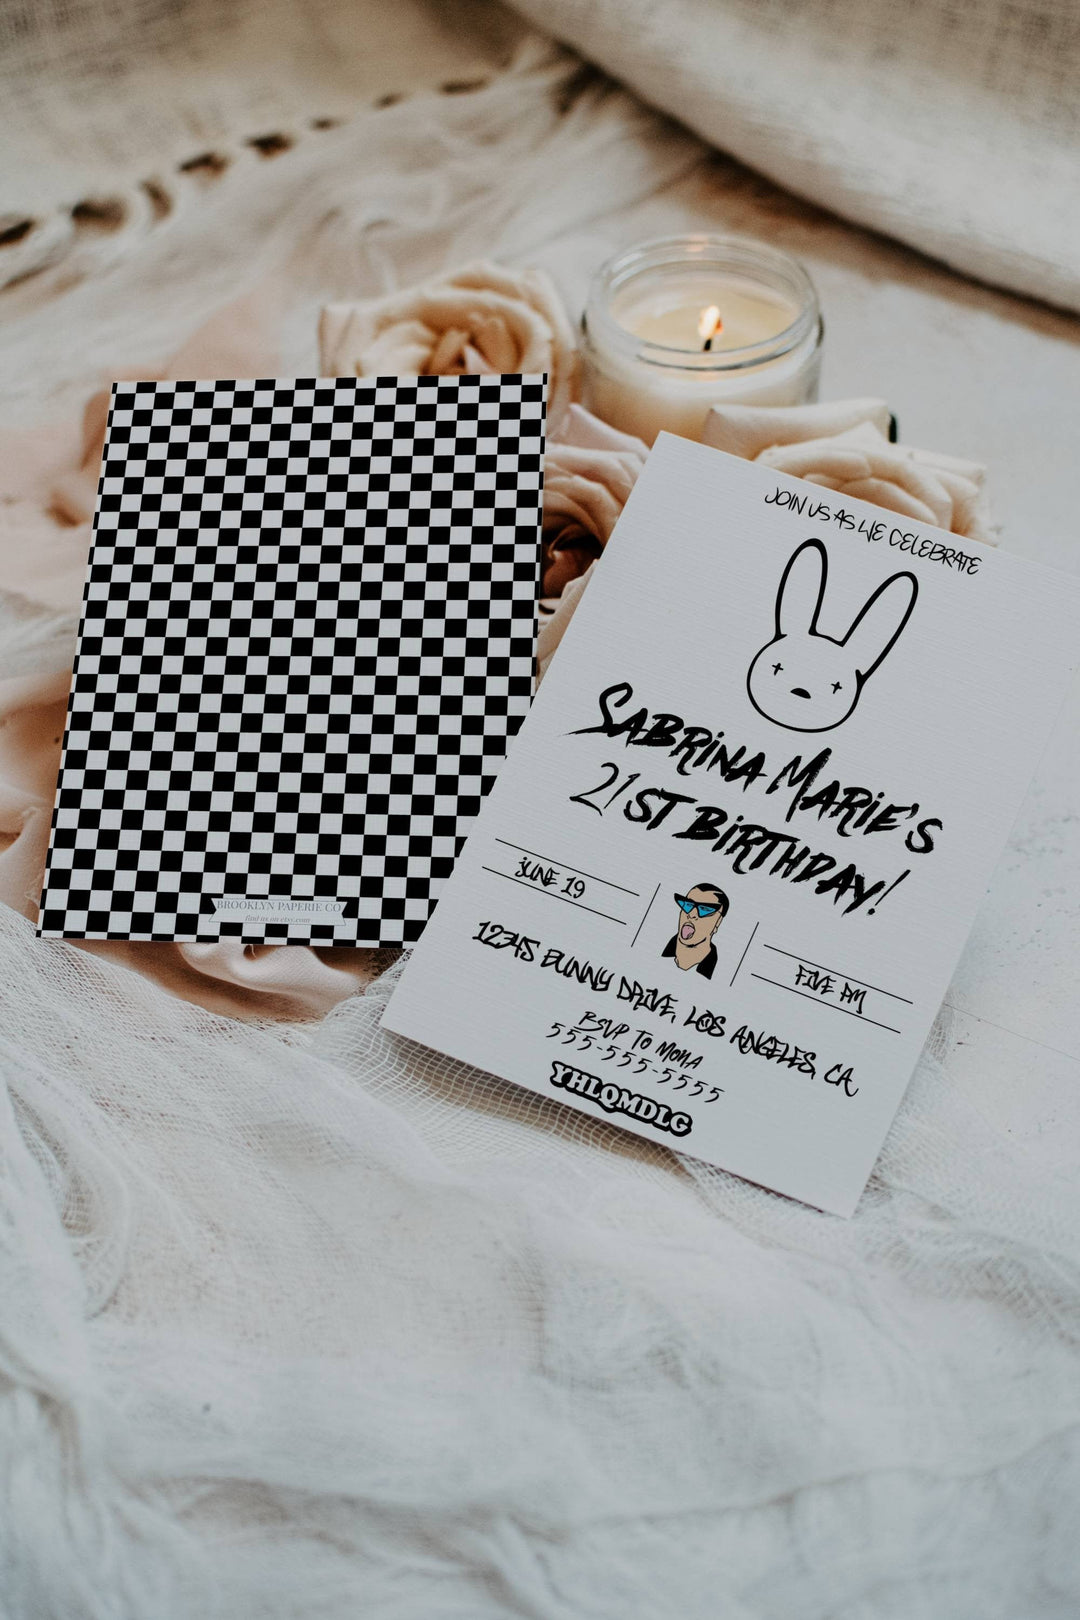 Bad Bunny Birthday Invitation - Bad Bunny Birthday Theme - YHLQMDLG Birthday Invitation - Invitación de cumpleaños de Bad Bunny - Bday Card